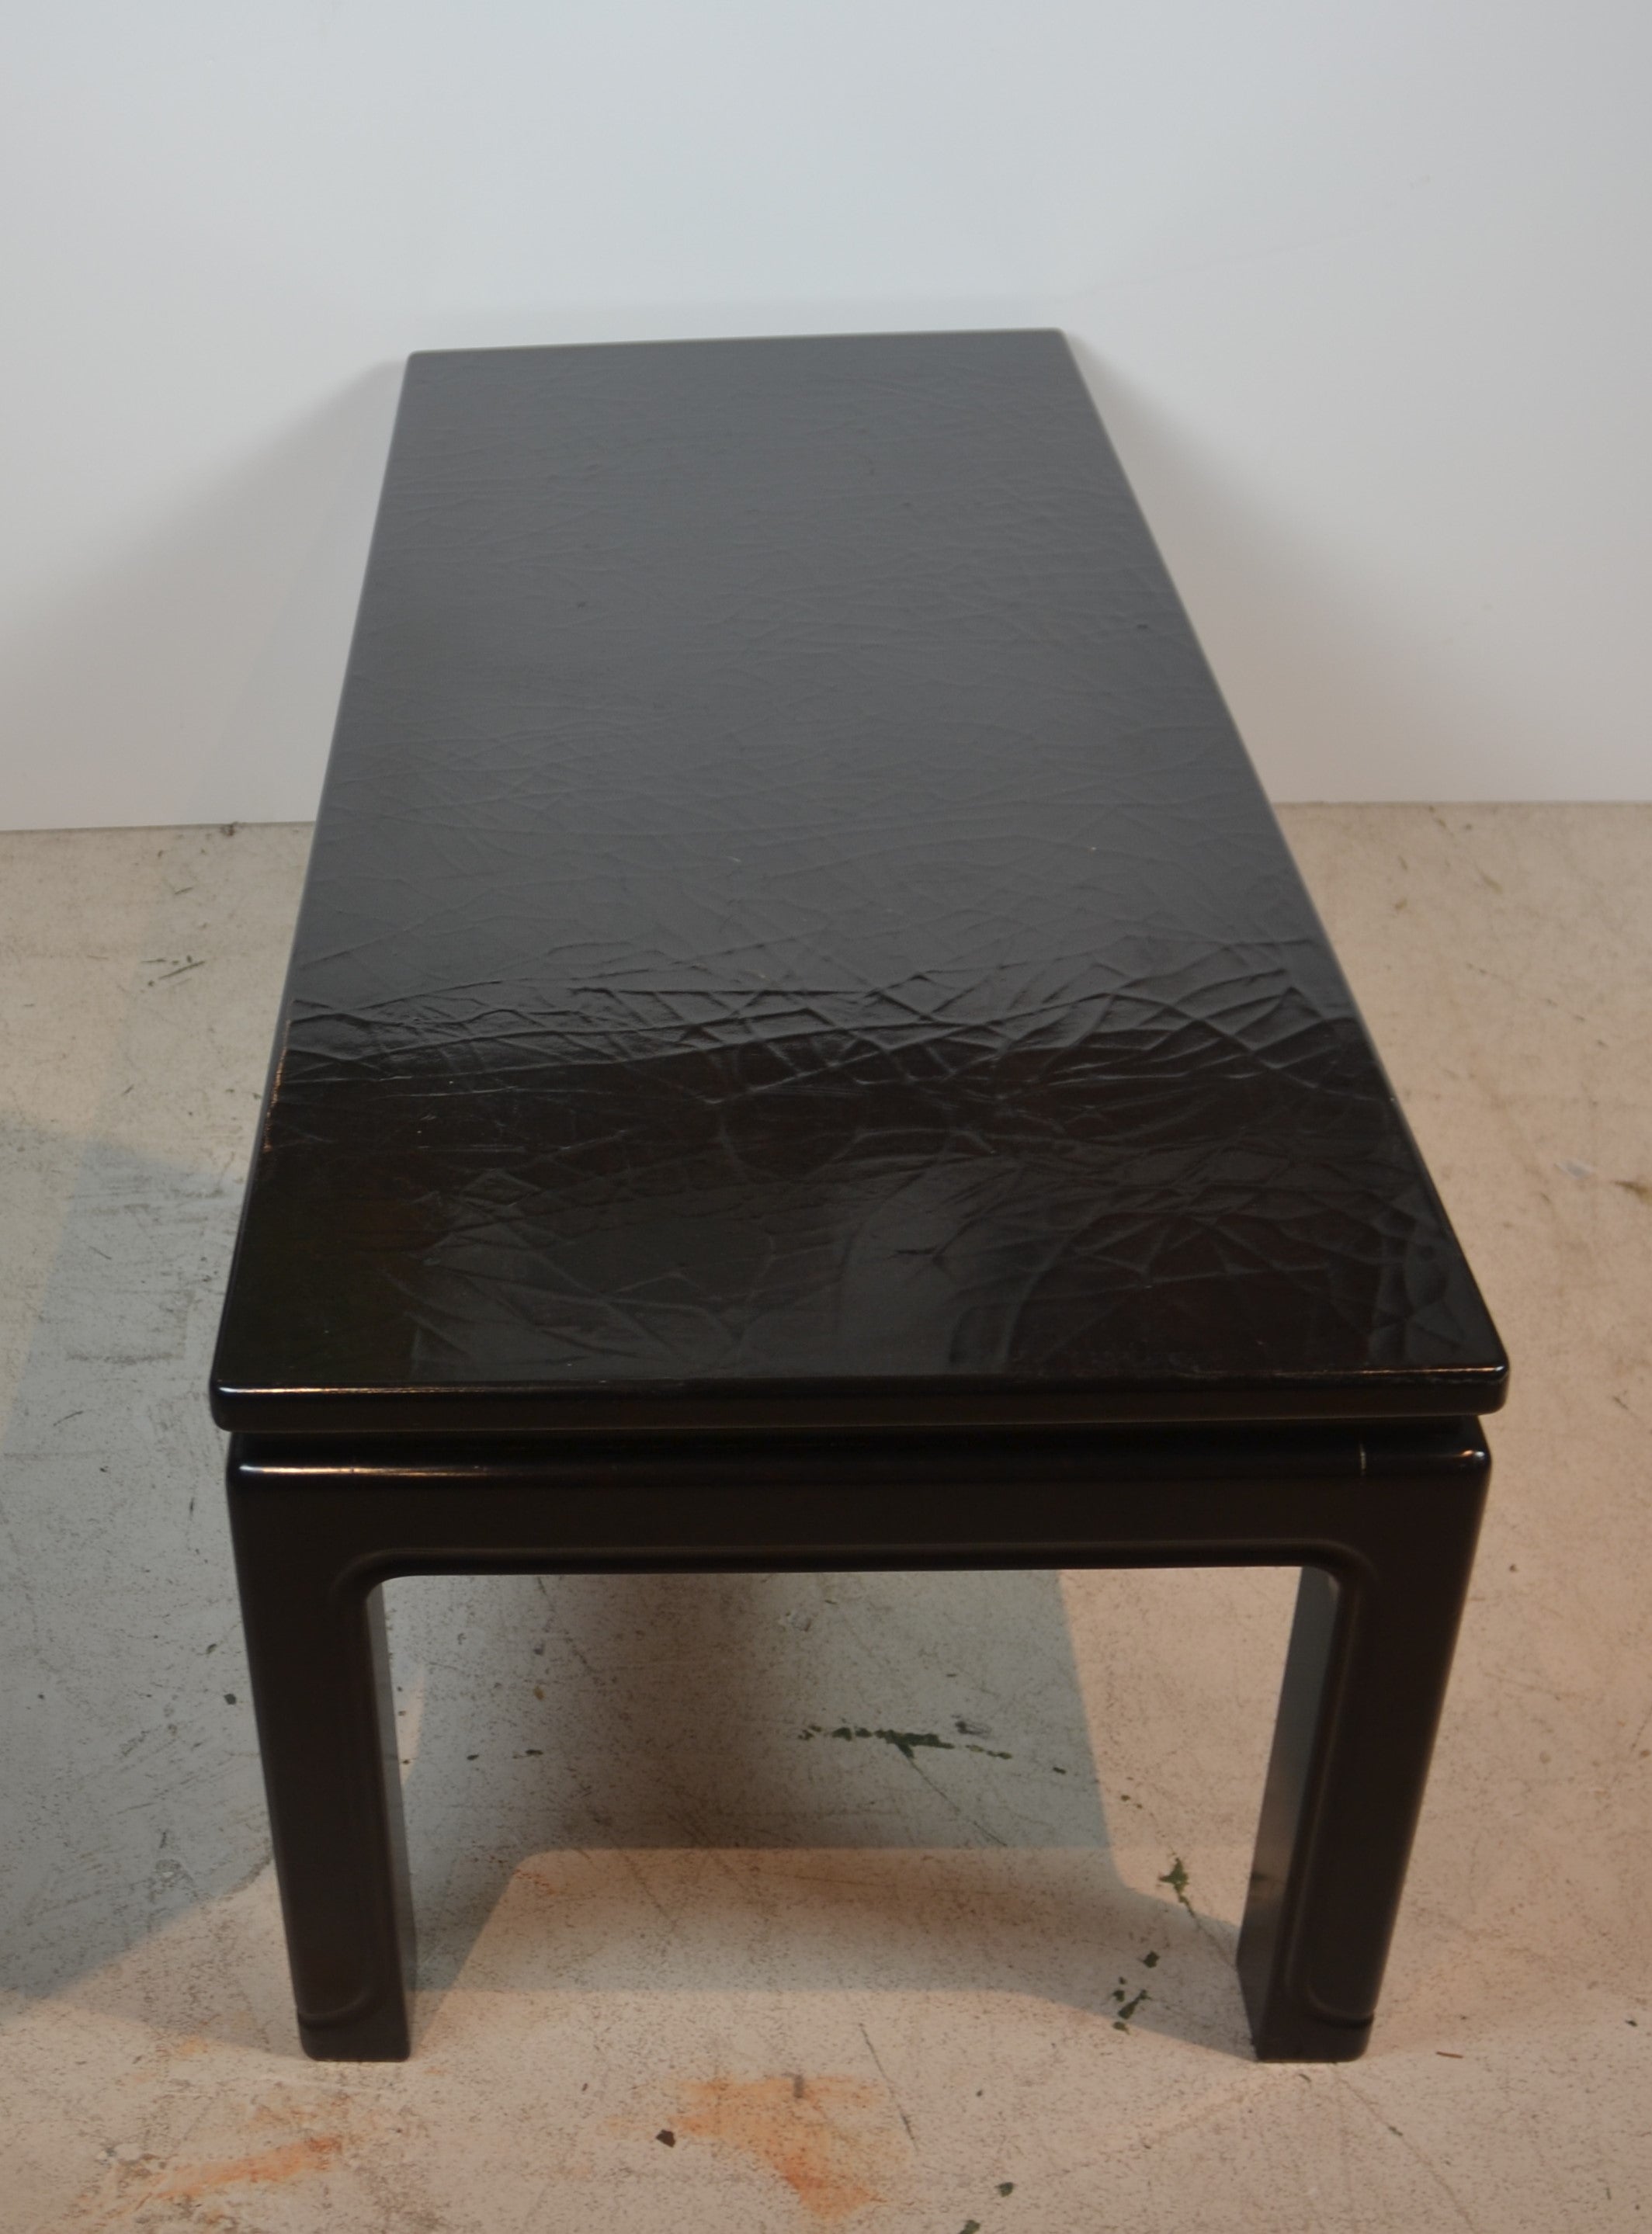 Black lacquer finish cofffee table.